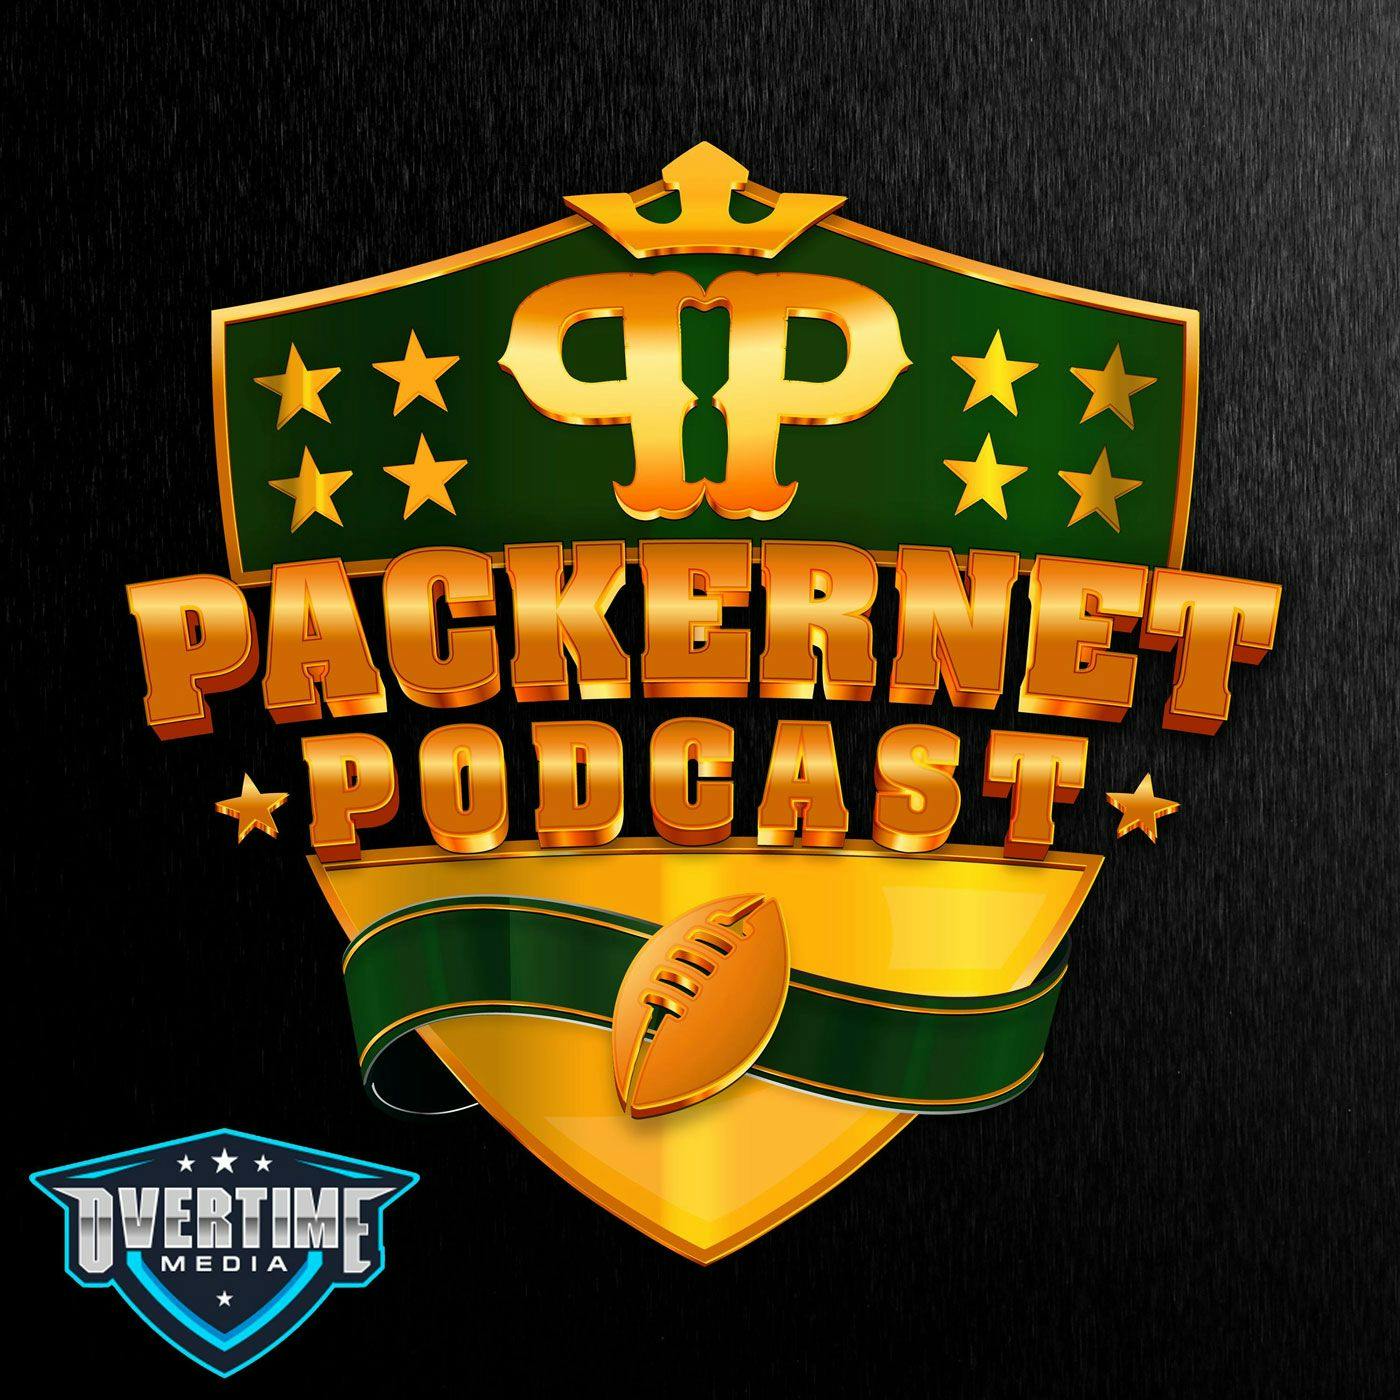 Packernet Podcast logo